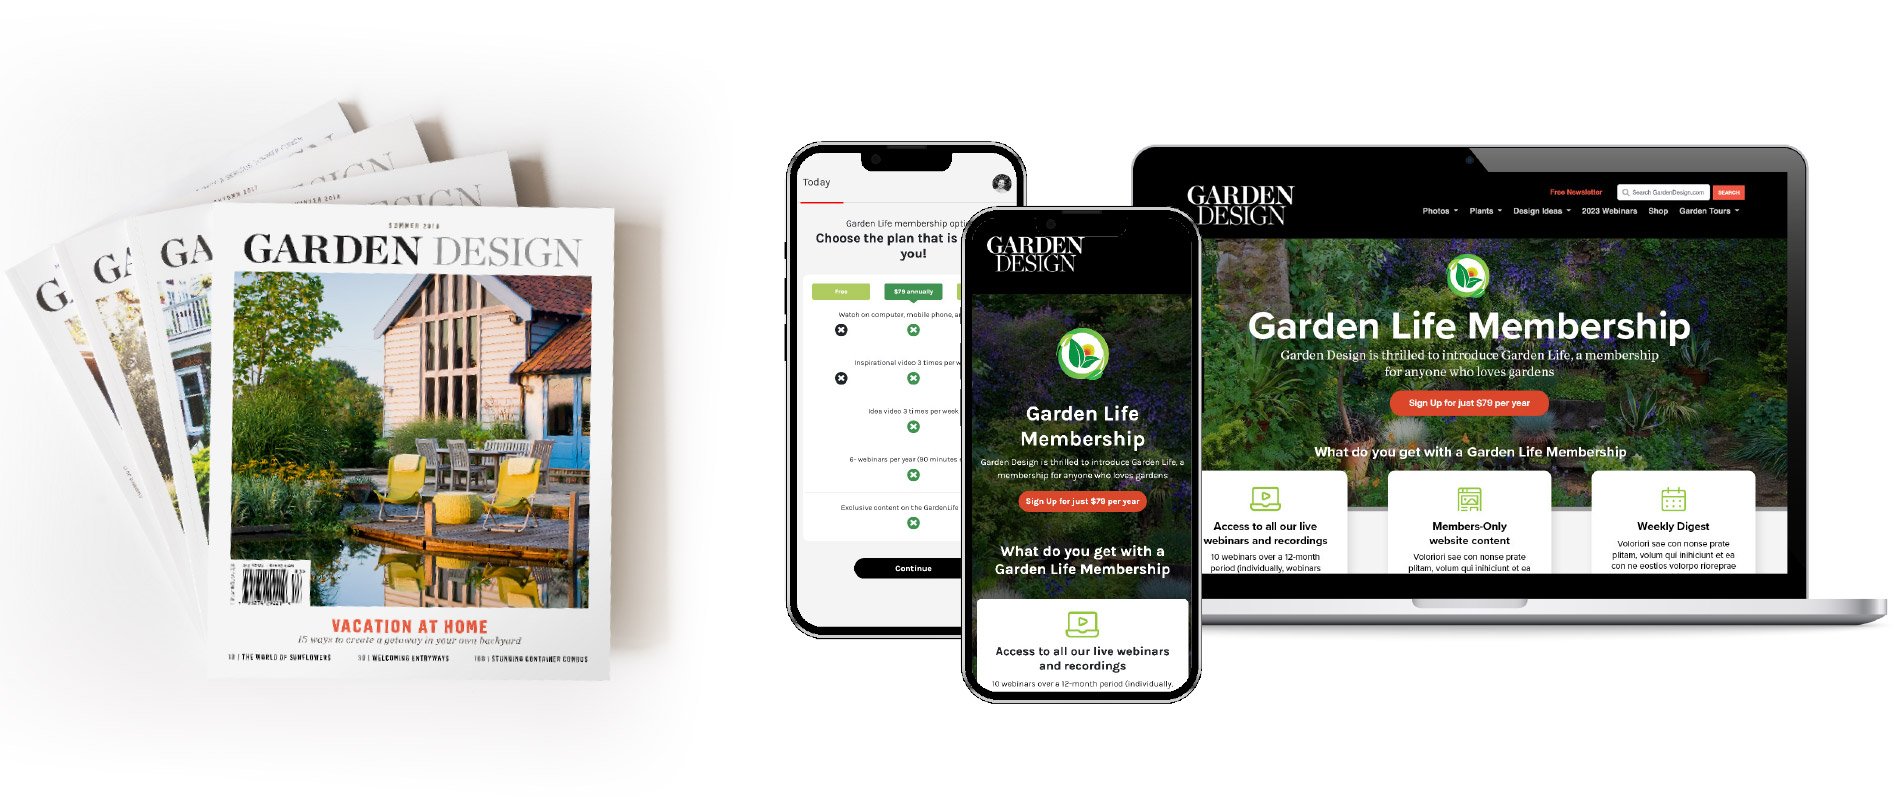 Garden Design Magazine